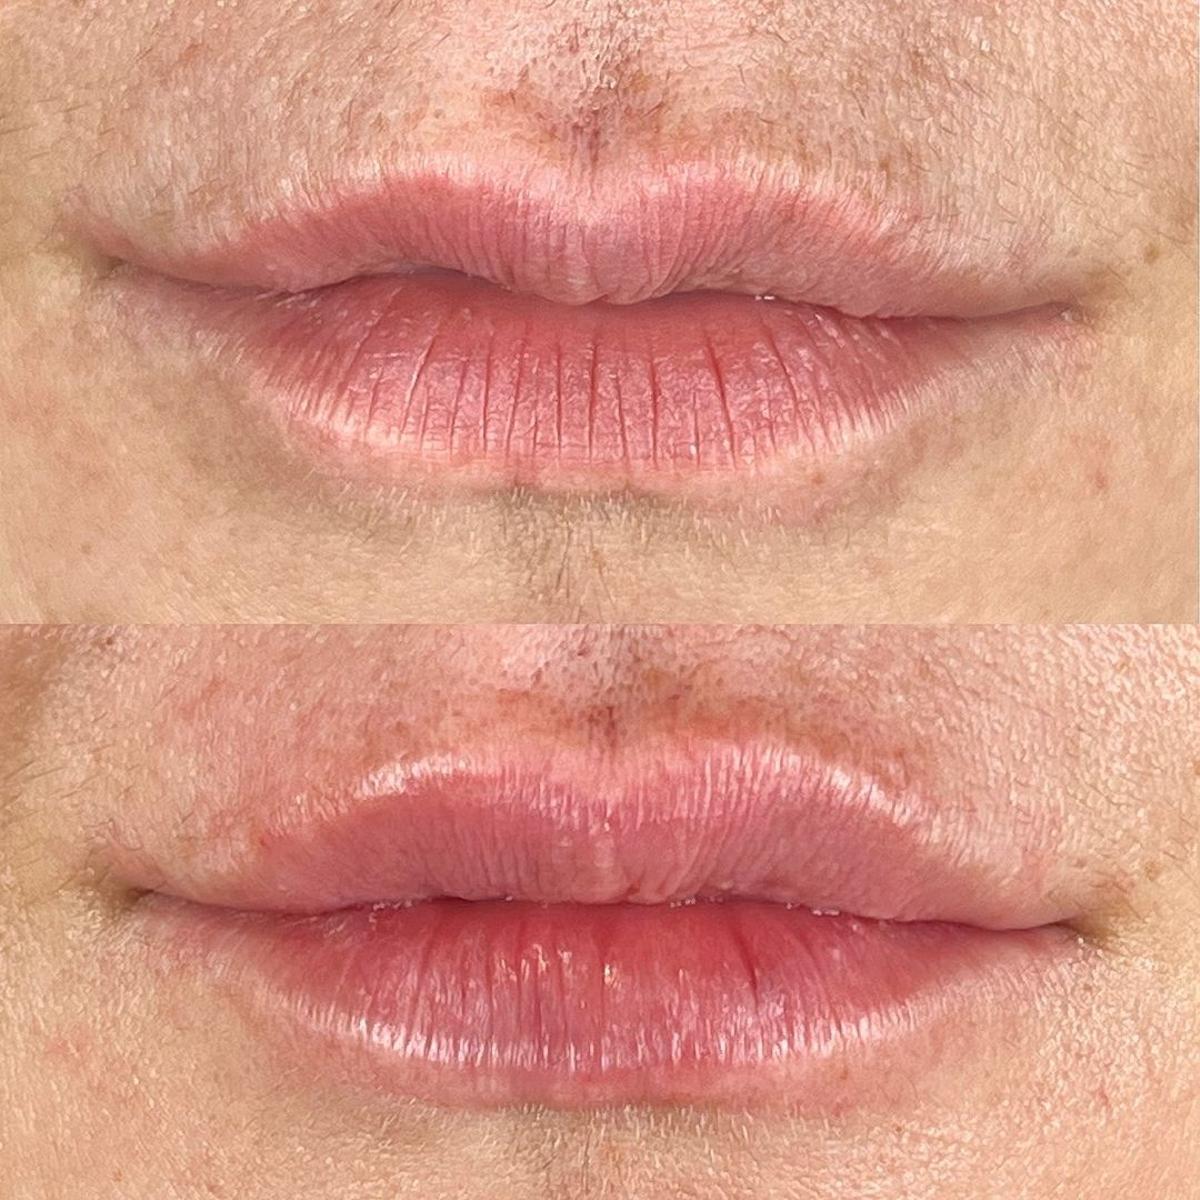 El antes y el después de un tratamiento de labios.